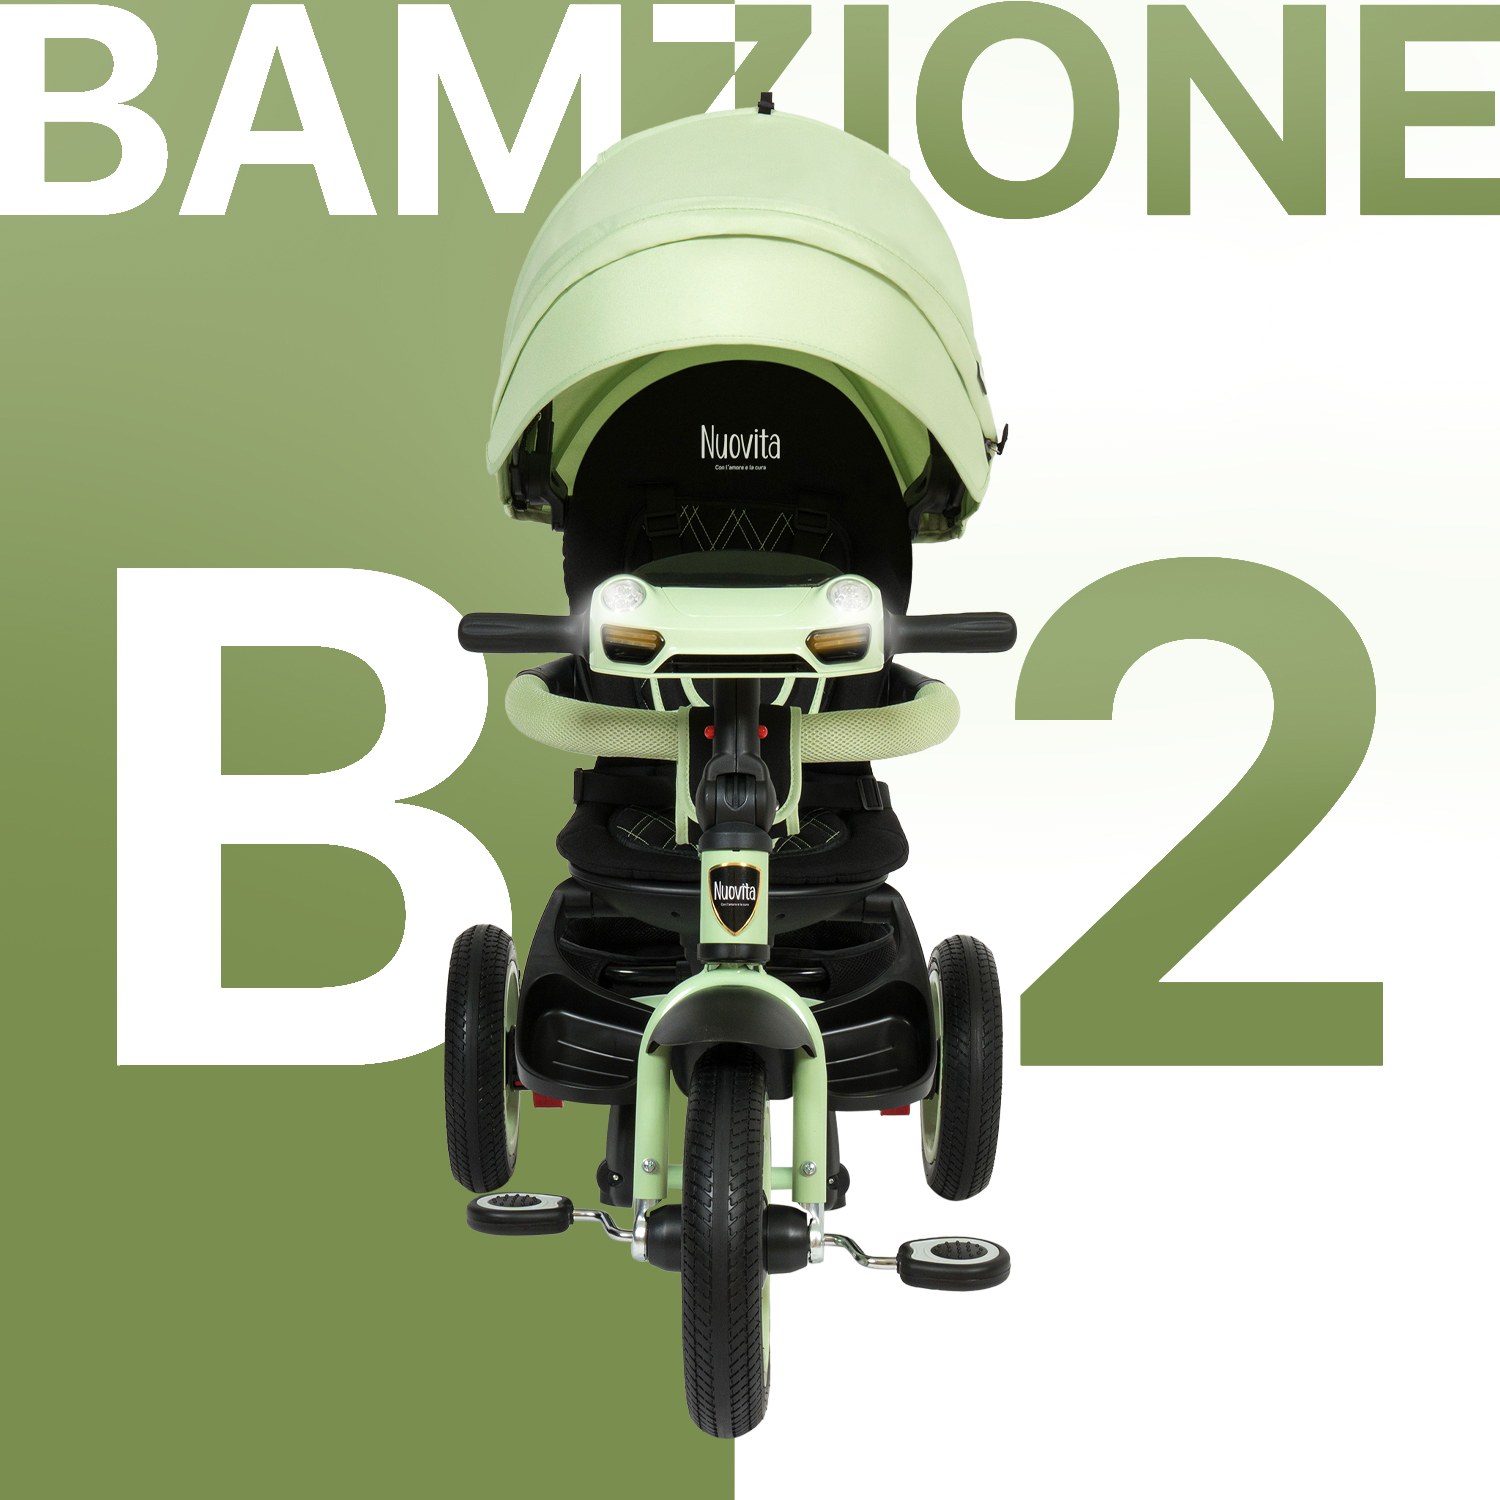 Трехколесный велосипед Nuovita Bamzione B2 мятный зеленый - фото 2